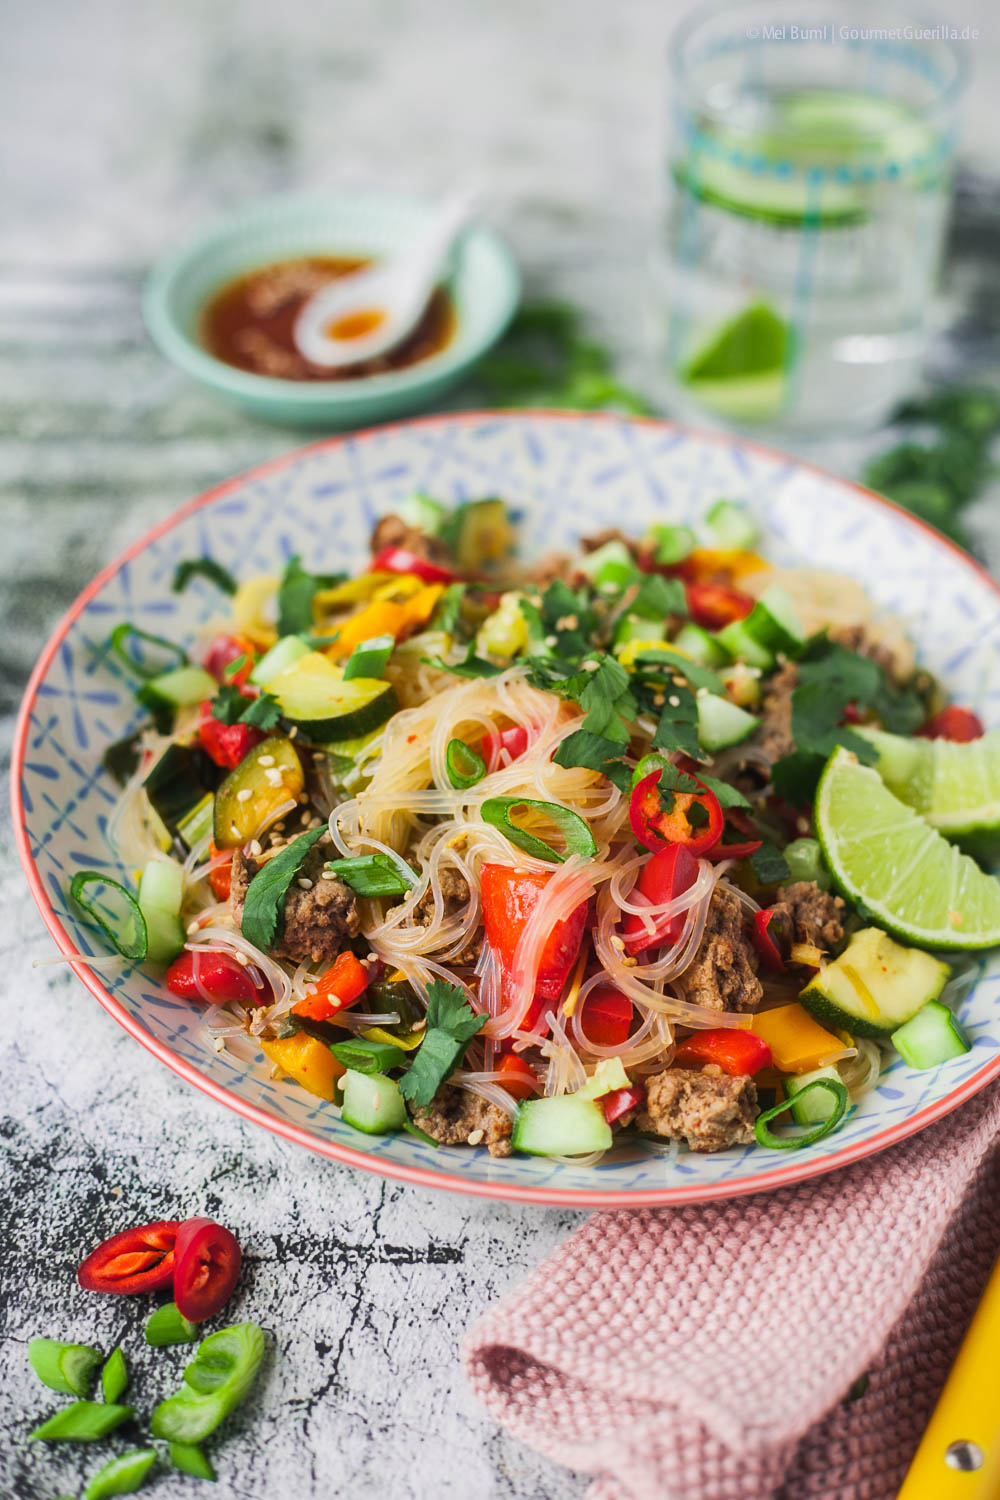 500 Kalorien Glasnudelsalat Thai-Style mit Rindfleisch und viel Gemüse | GourmetGuerilla.de